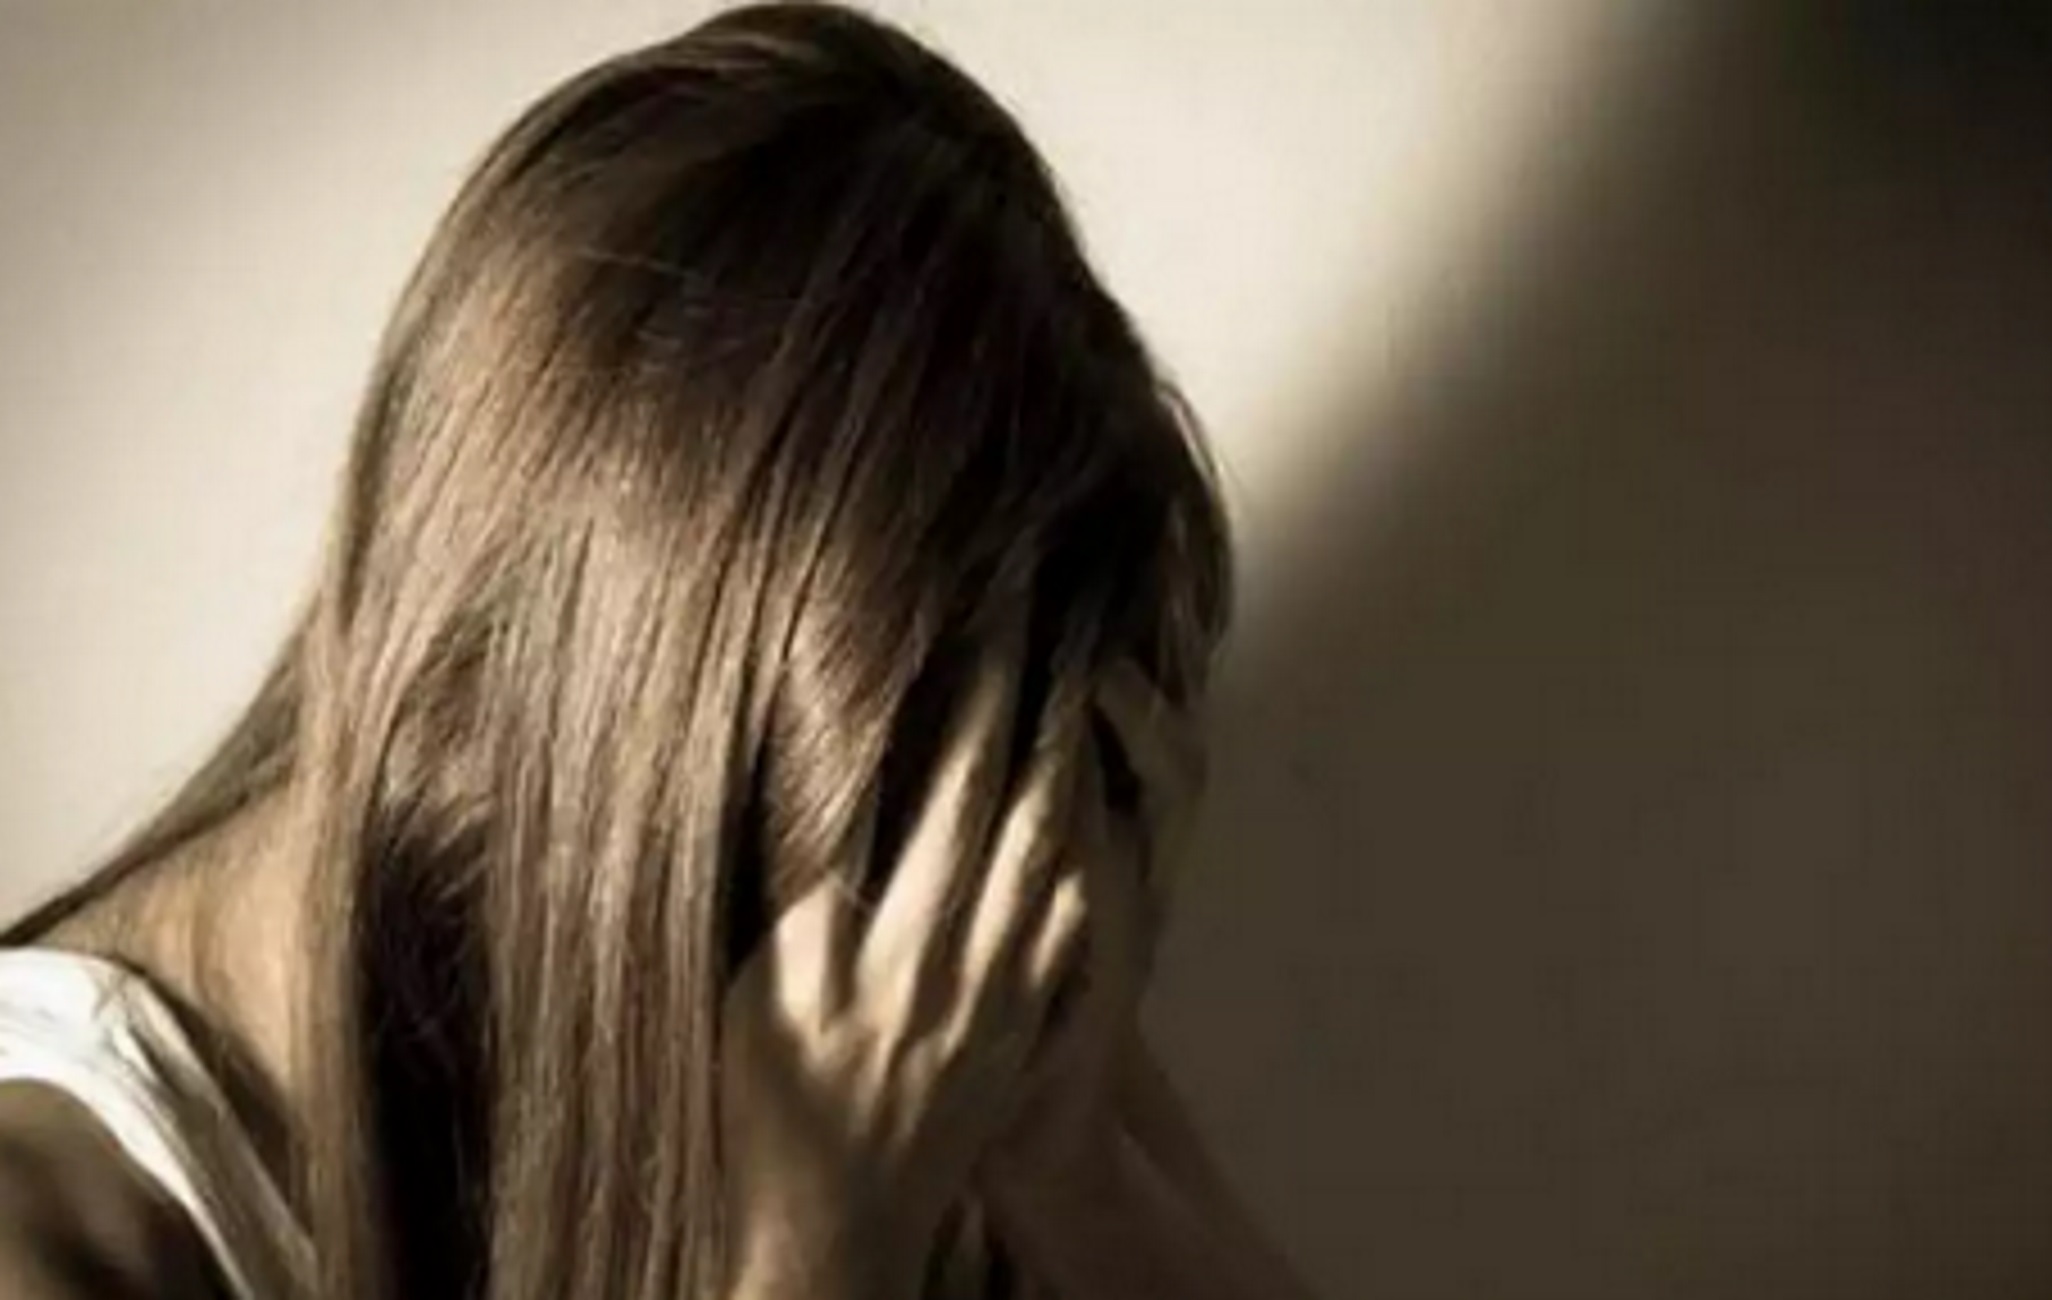 Καταγγελία για ομαδικό βιασμό 24χρονης στη Θεσσαλονίκη: Έρευνα και για κύκλωμα μαστροπείας